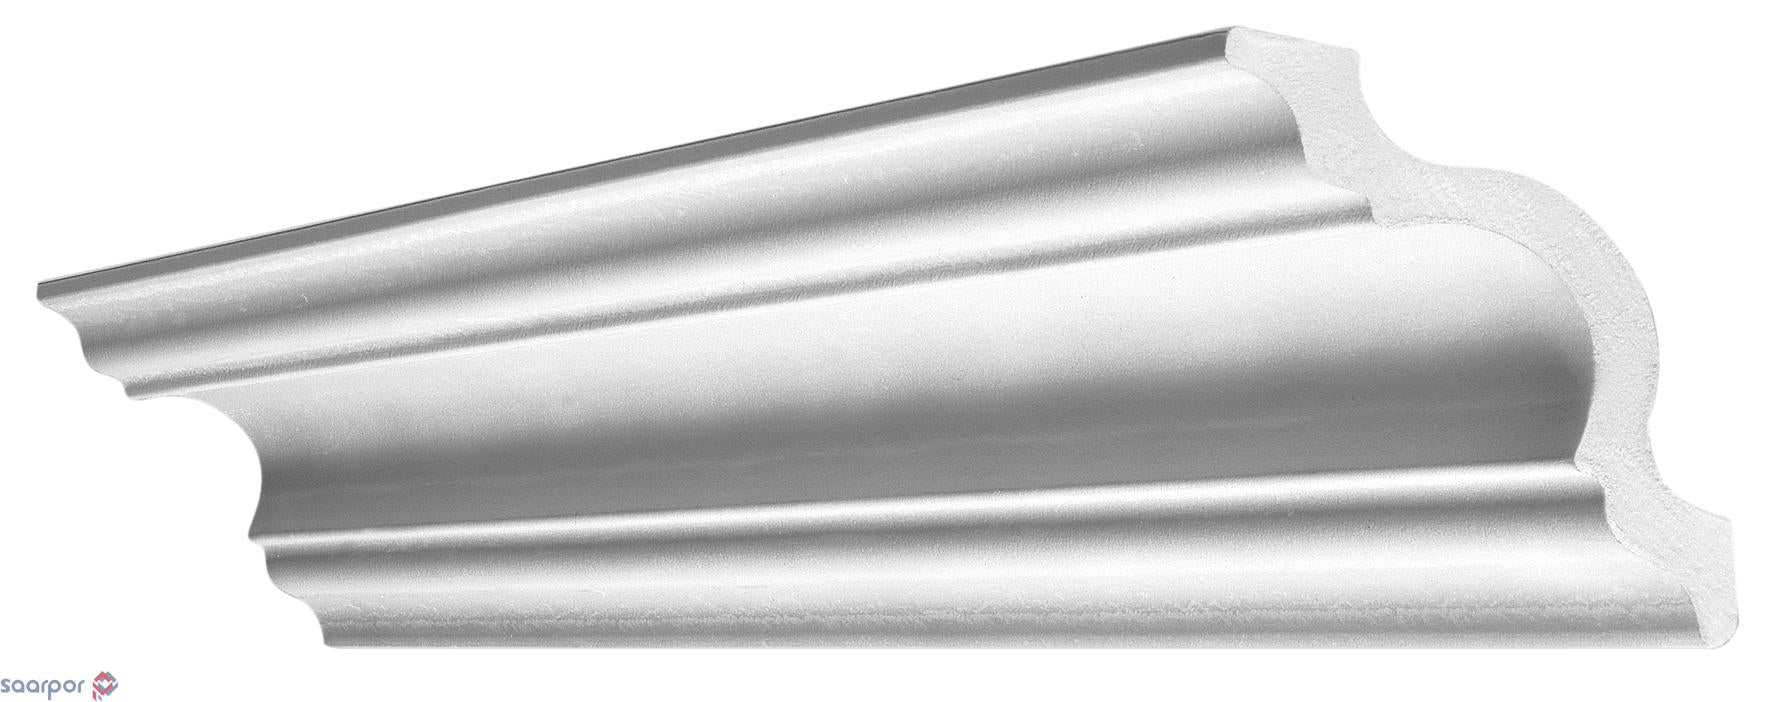 30ML di Cornice in polistirolo per soffitto 110X110 mm modello "FRAGOLA" (15 aste da 2ML) - Eternal Parquet